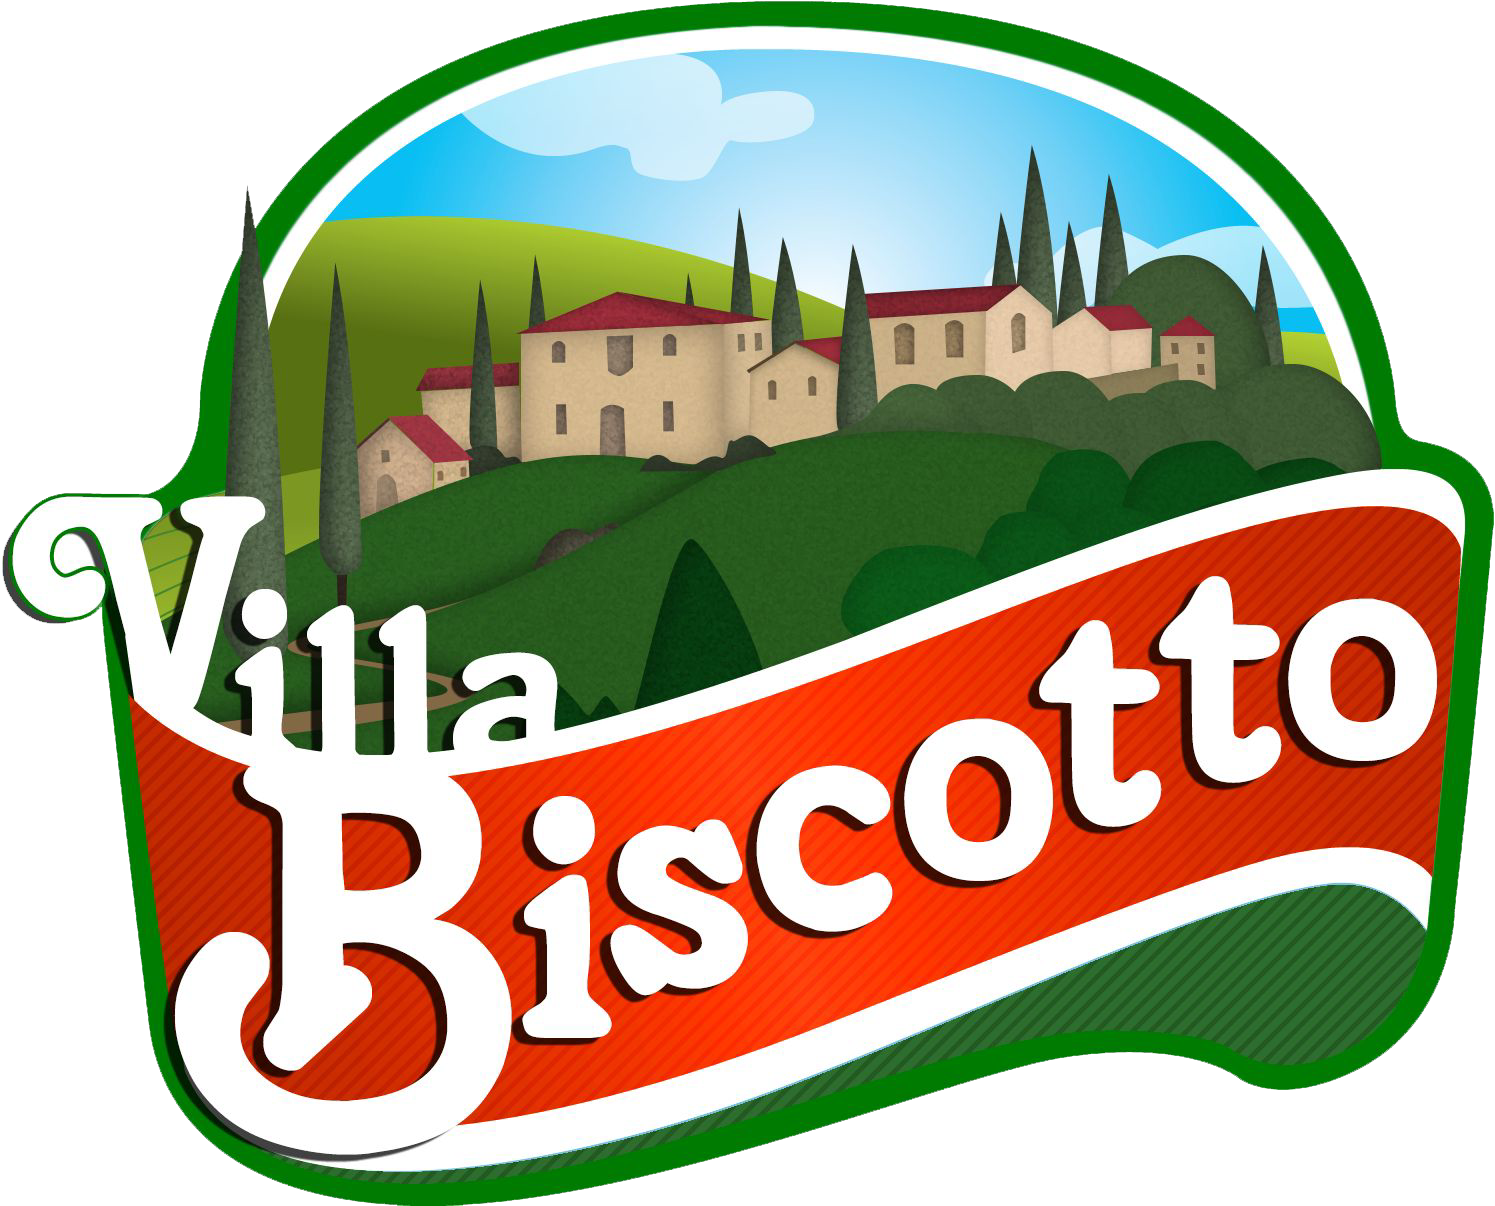 Villa Biscotto 